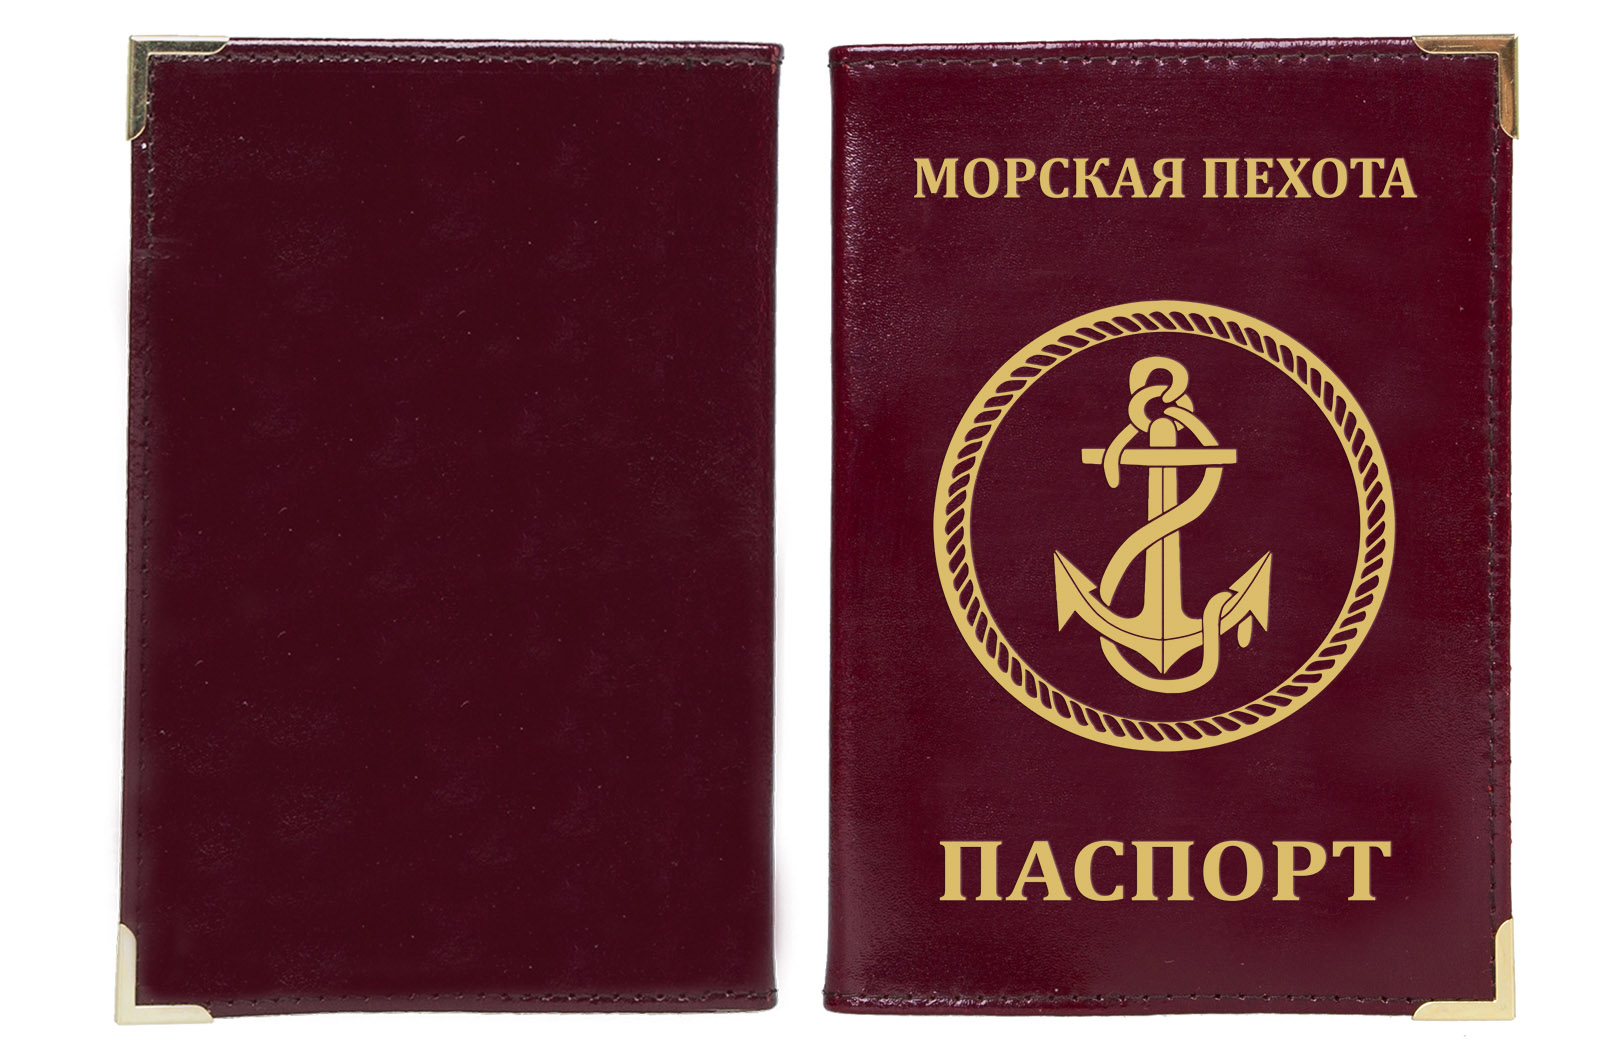 Обложка на паспорт с эмблемой Морской пехоты 